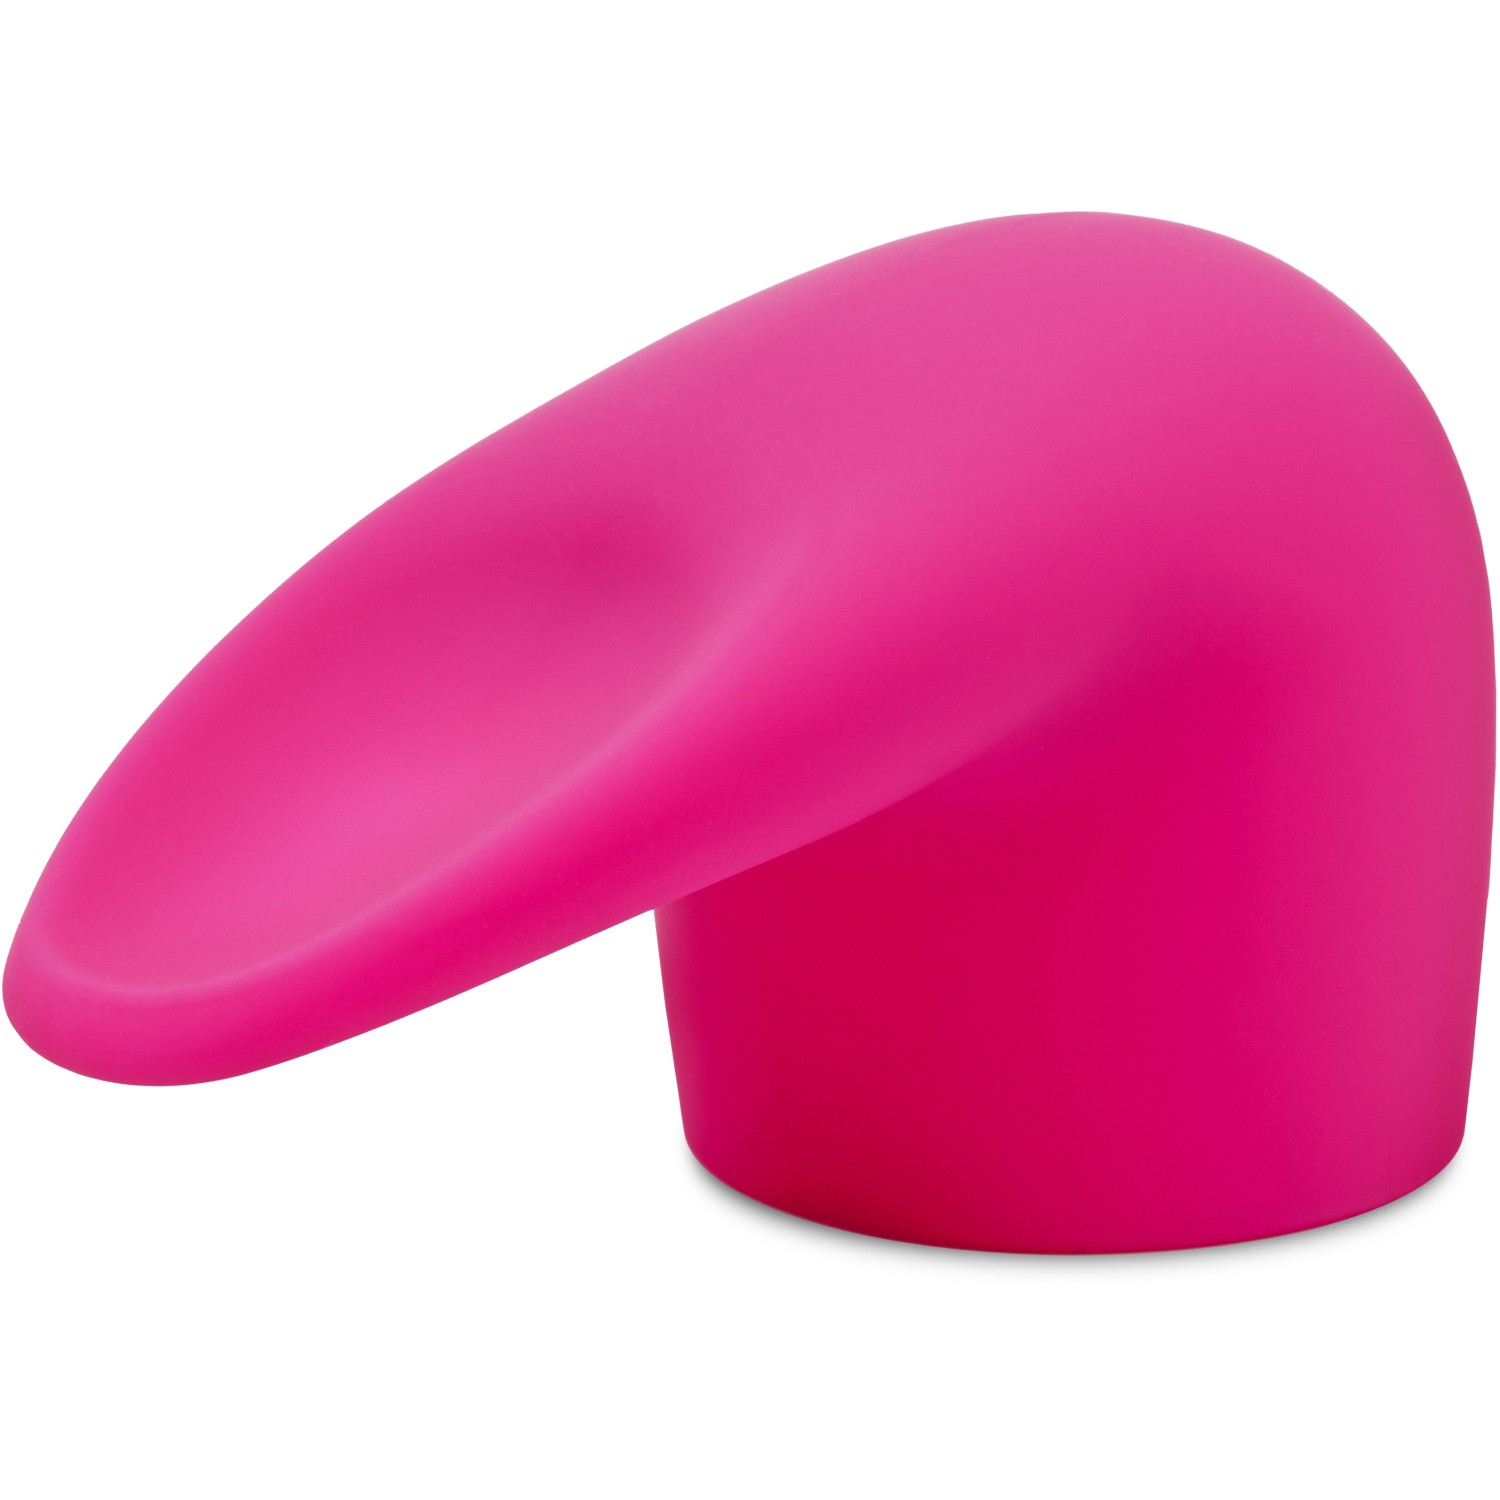 Насадка «Flick» на ванд для имитации орального секса, цвет розовый, Le Wand LW-048, длина 14 см.